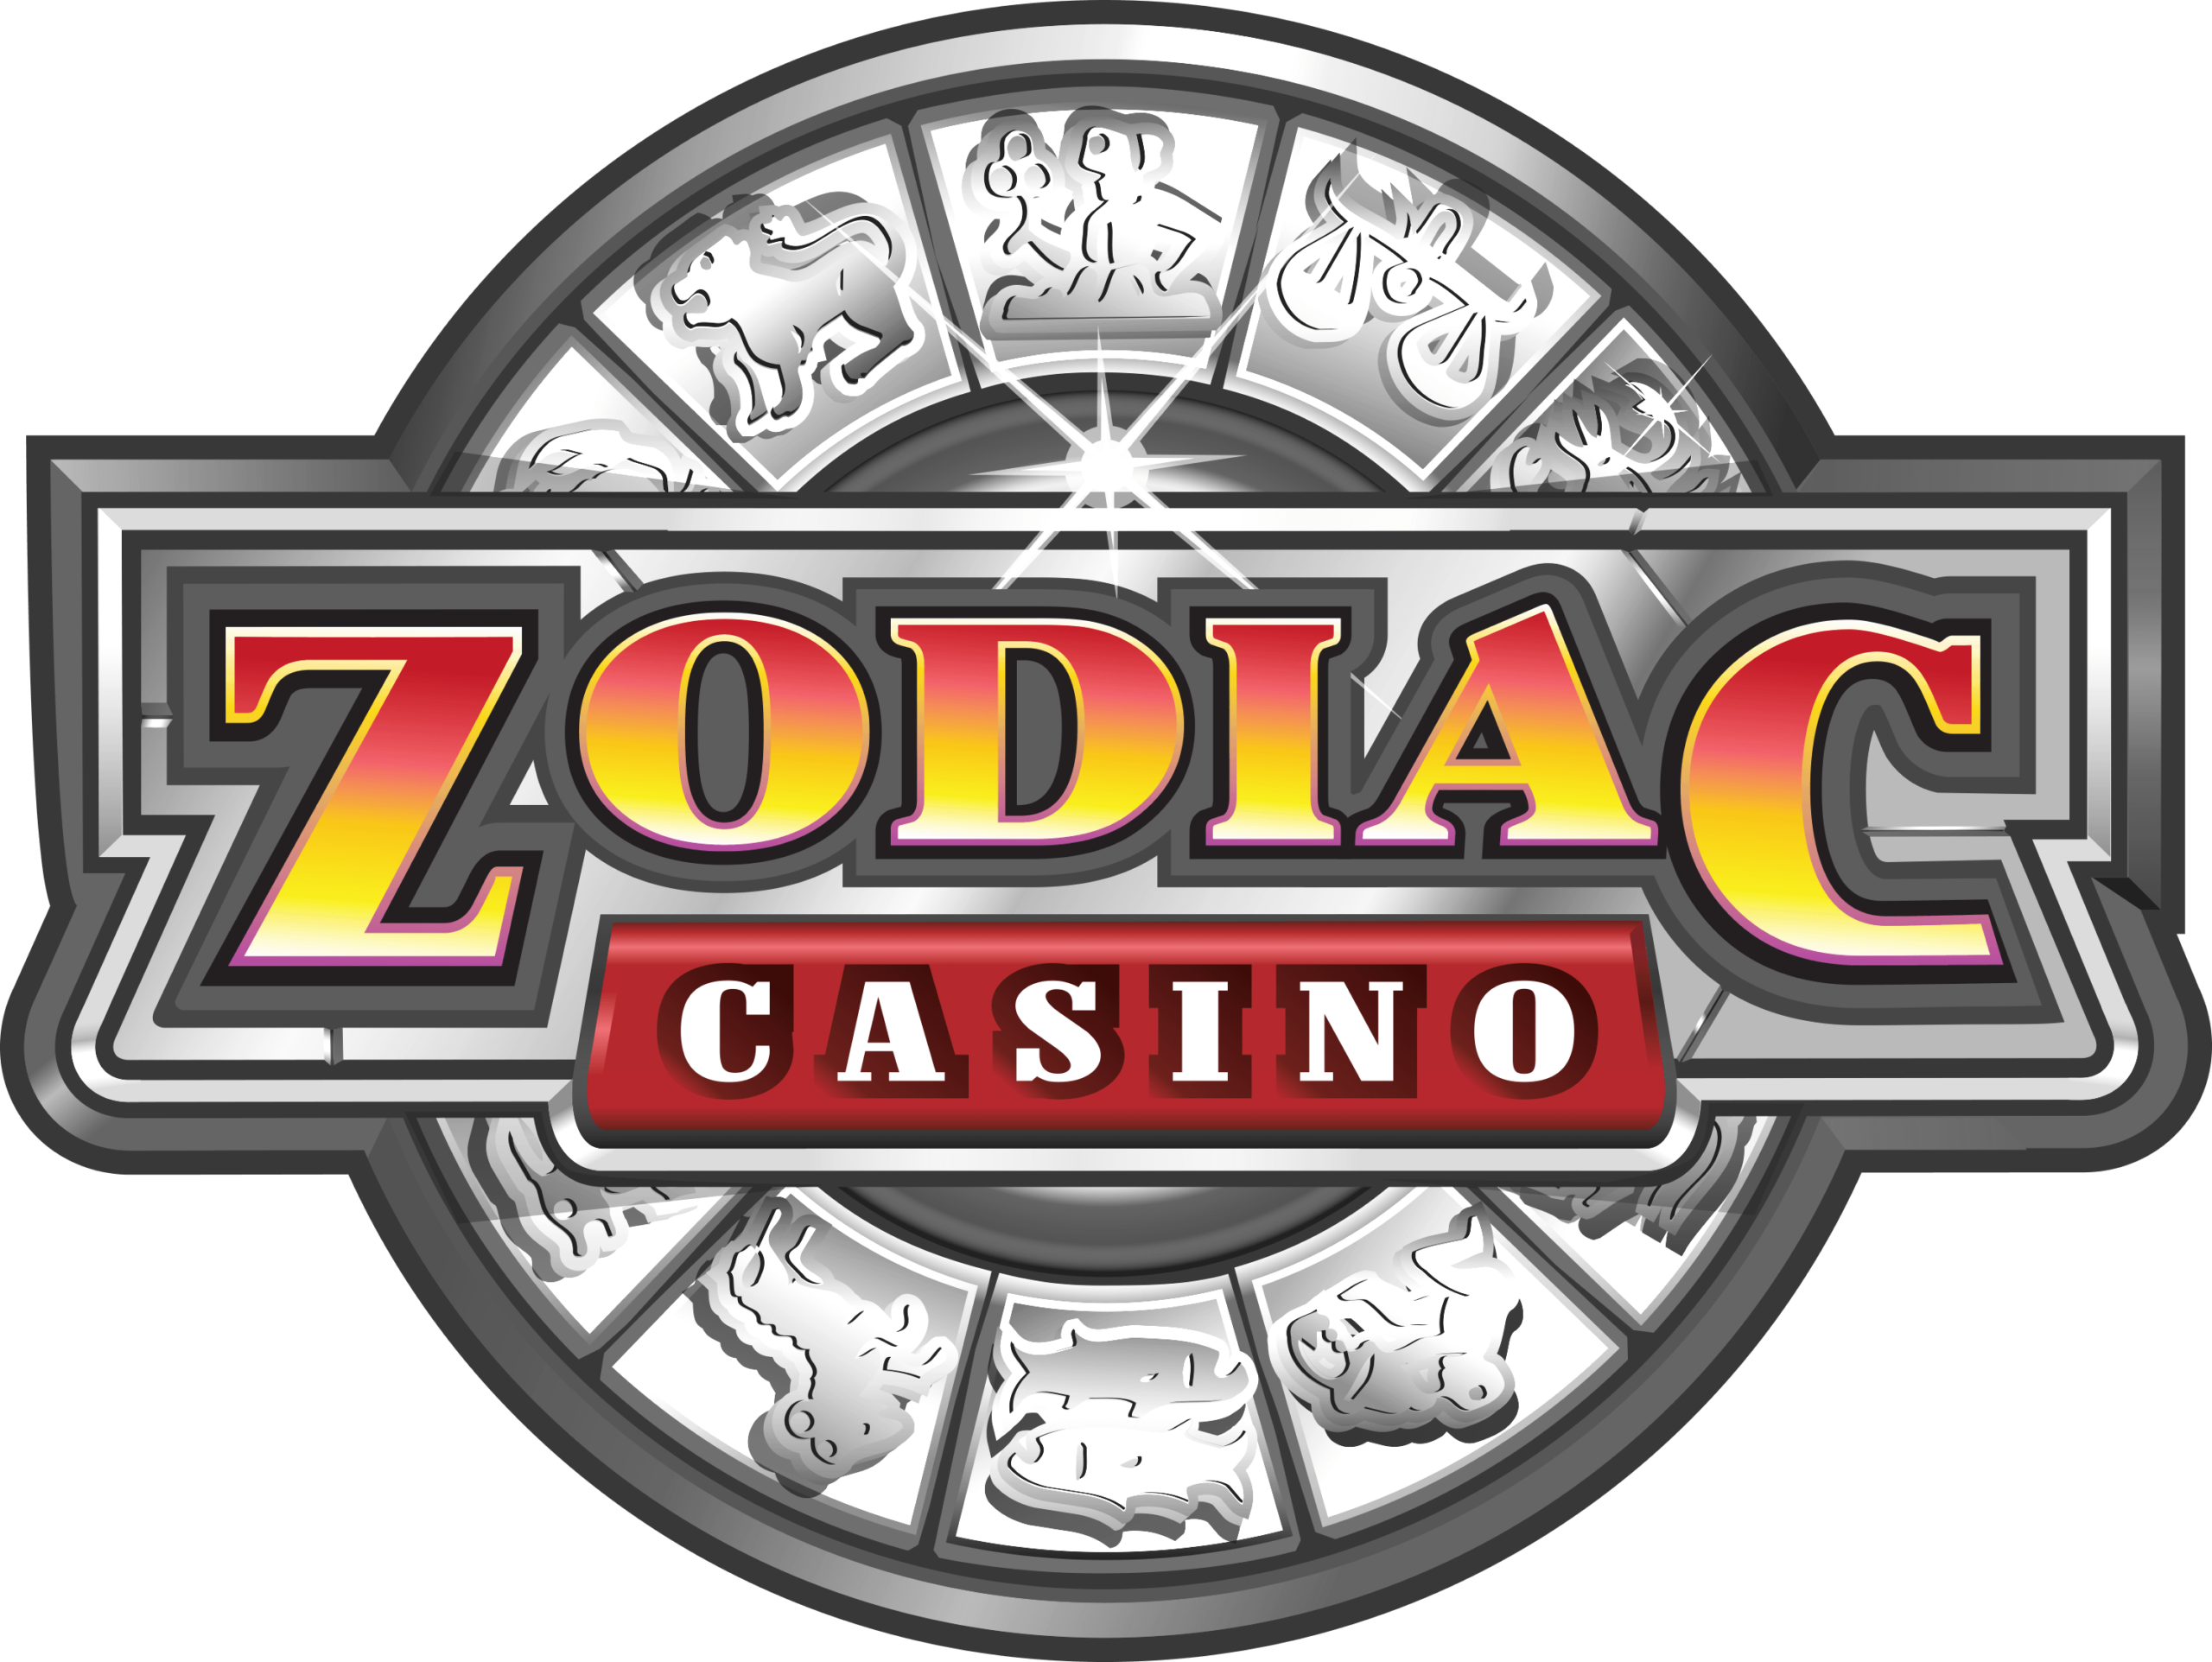 Zodiac Casino offres